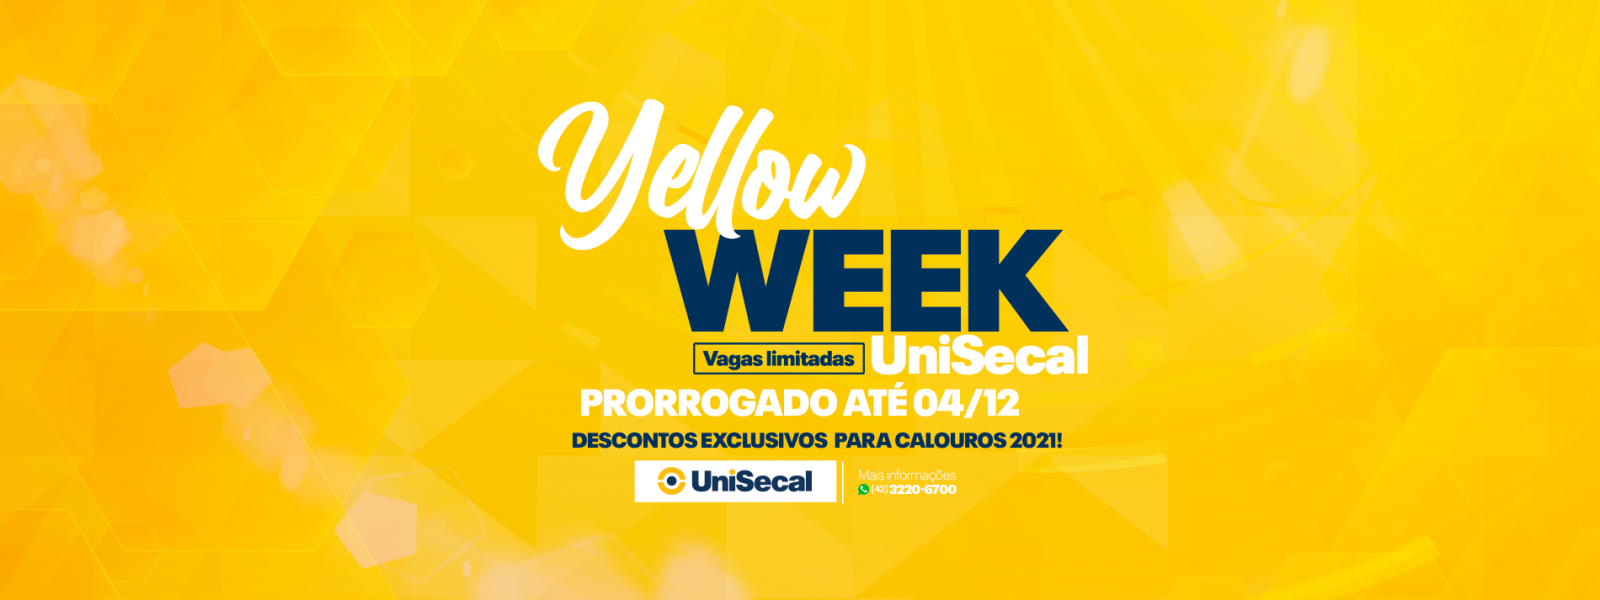 #PraCegoVer: A arte possui fundo amarelo. No centro, está escrito “Yellow Week UniSecal. Prorrogado até 04/12. Vagas limitadas. Desconto exclusivos para calouros 2021!”. A imagem é assinada com a logo da UniSecal e, ao lado, está escrito “Mais informações: 42 3220 6700”.